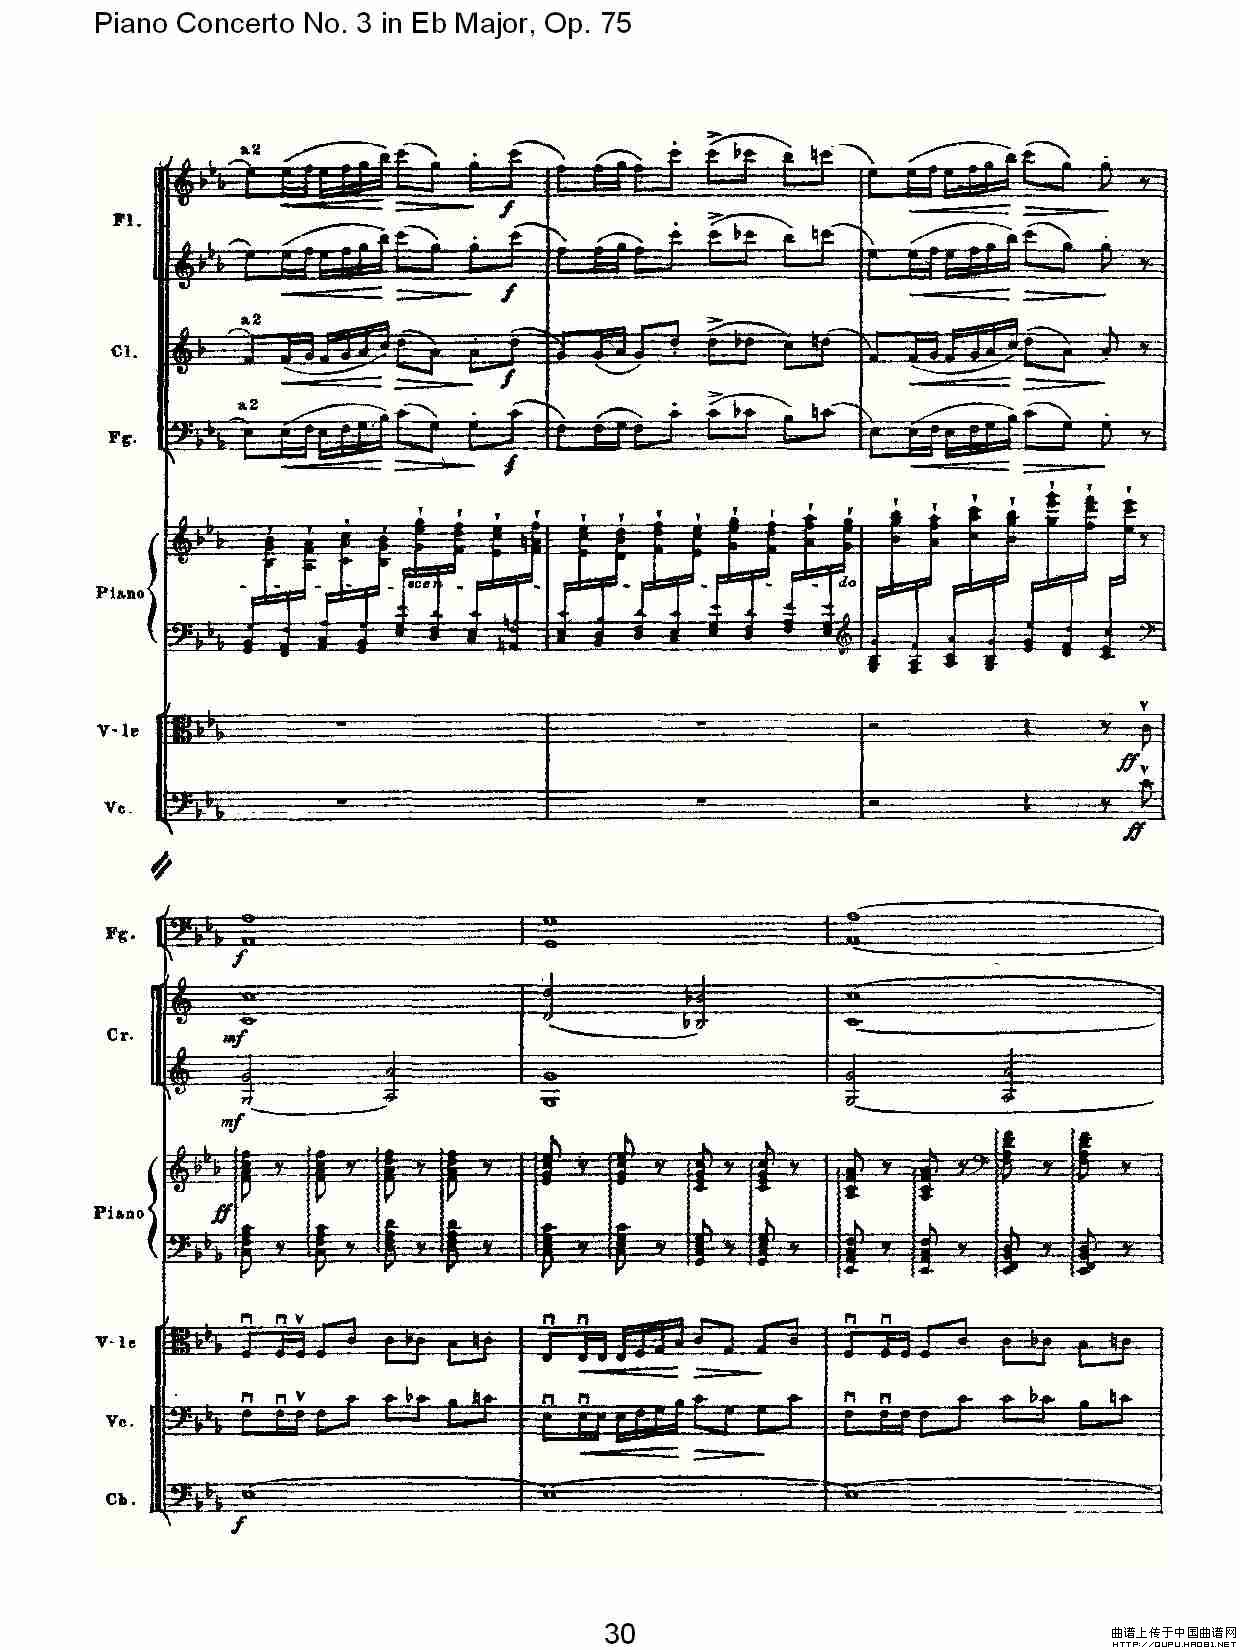 Piano Concerto No.3 in Eb Major, Op.75（Eb大调第三钢琴协奏）(1)_原文件名：Piano Concerto No.3 in Eb Major, Op.7531.jpg